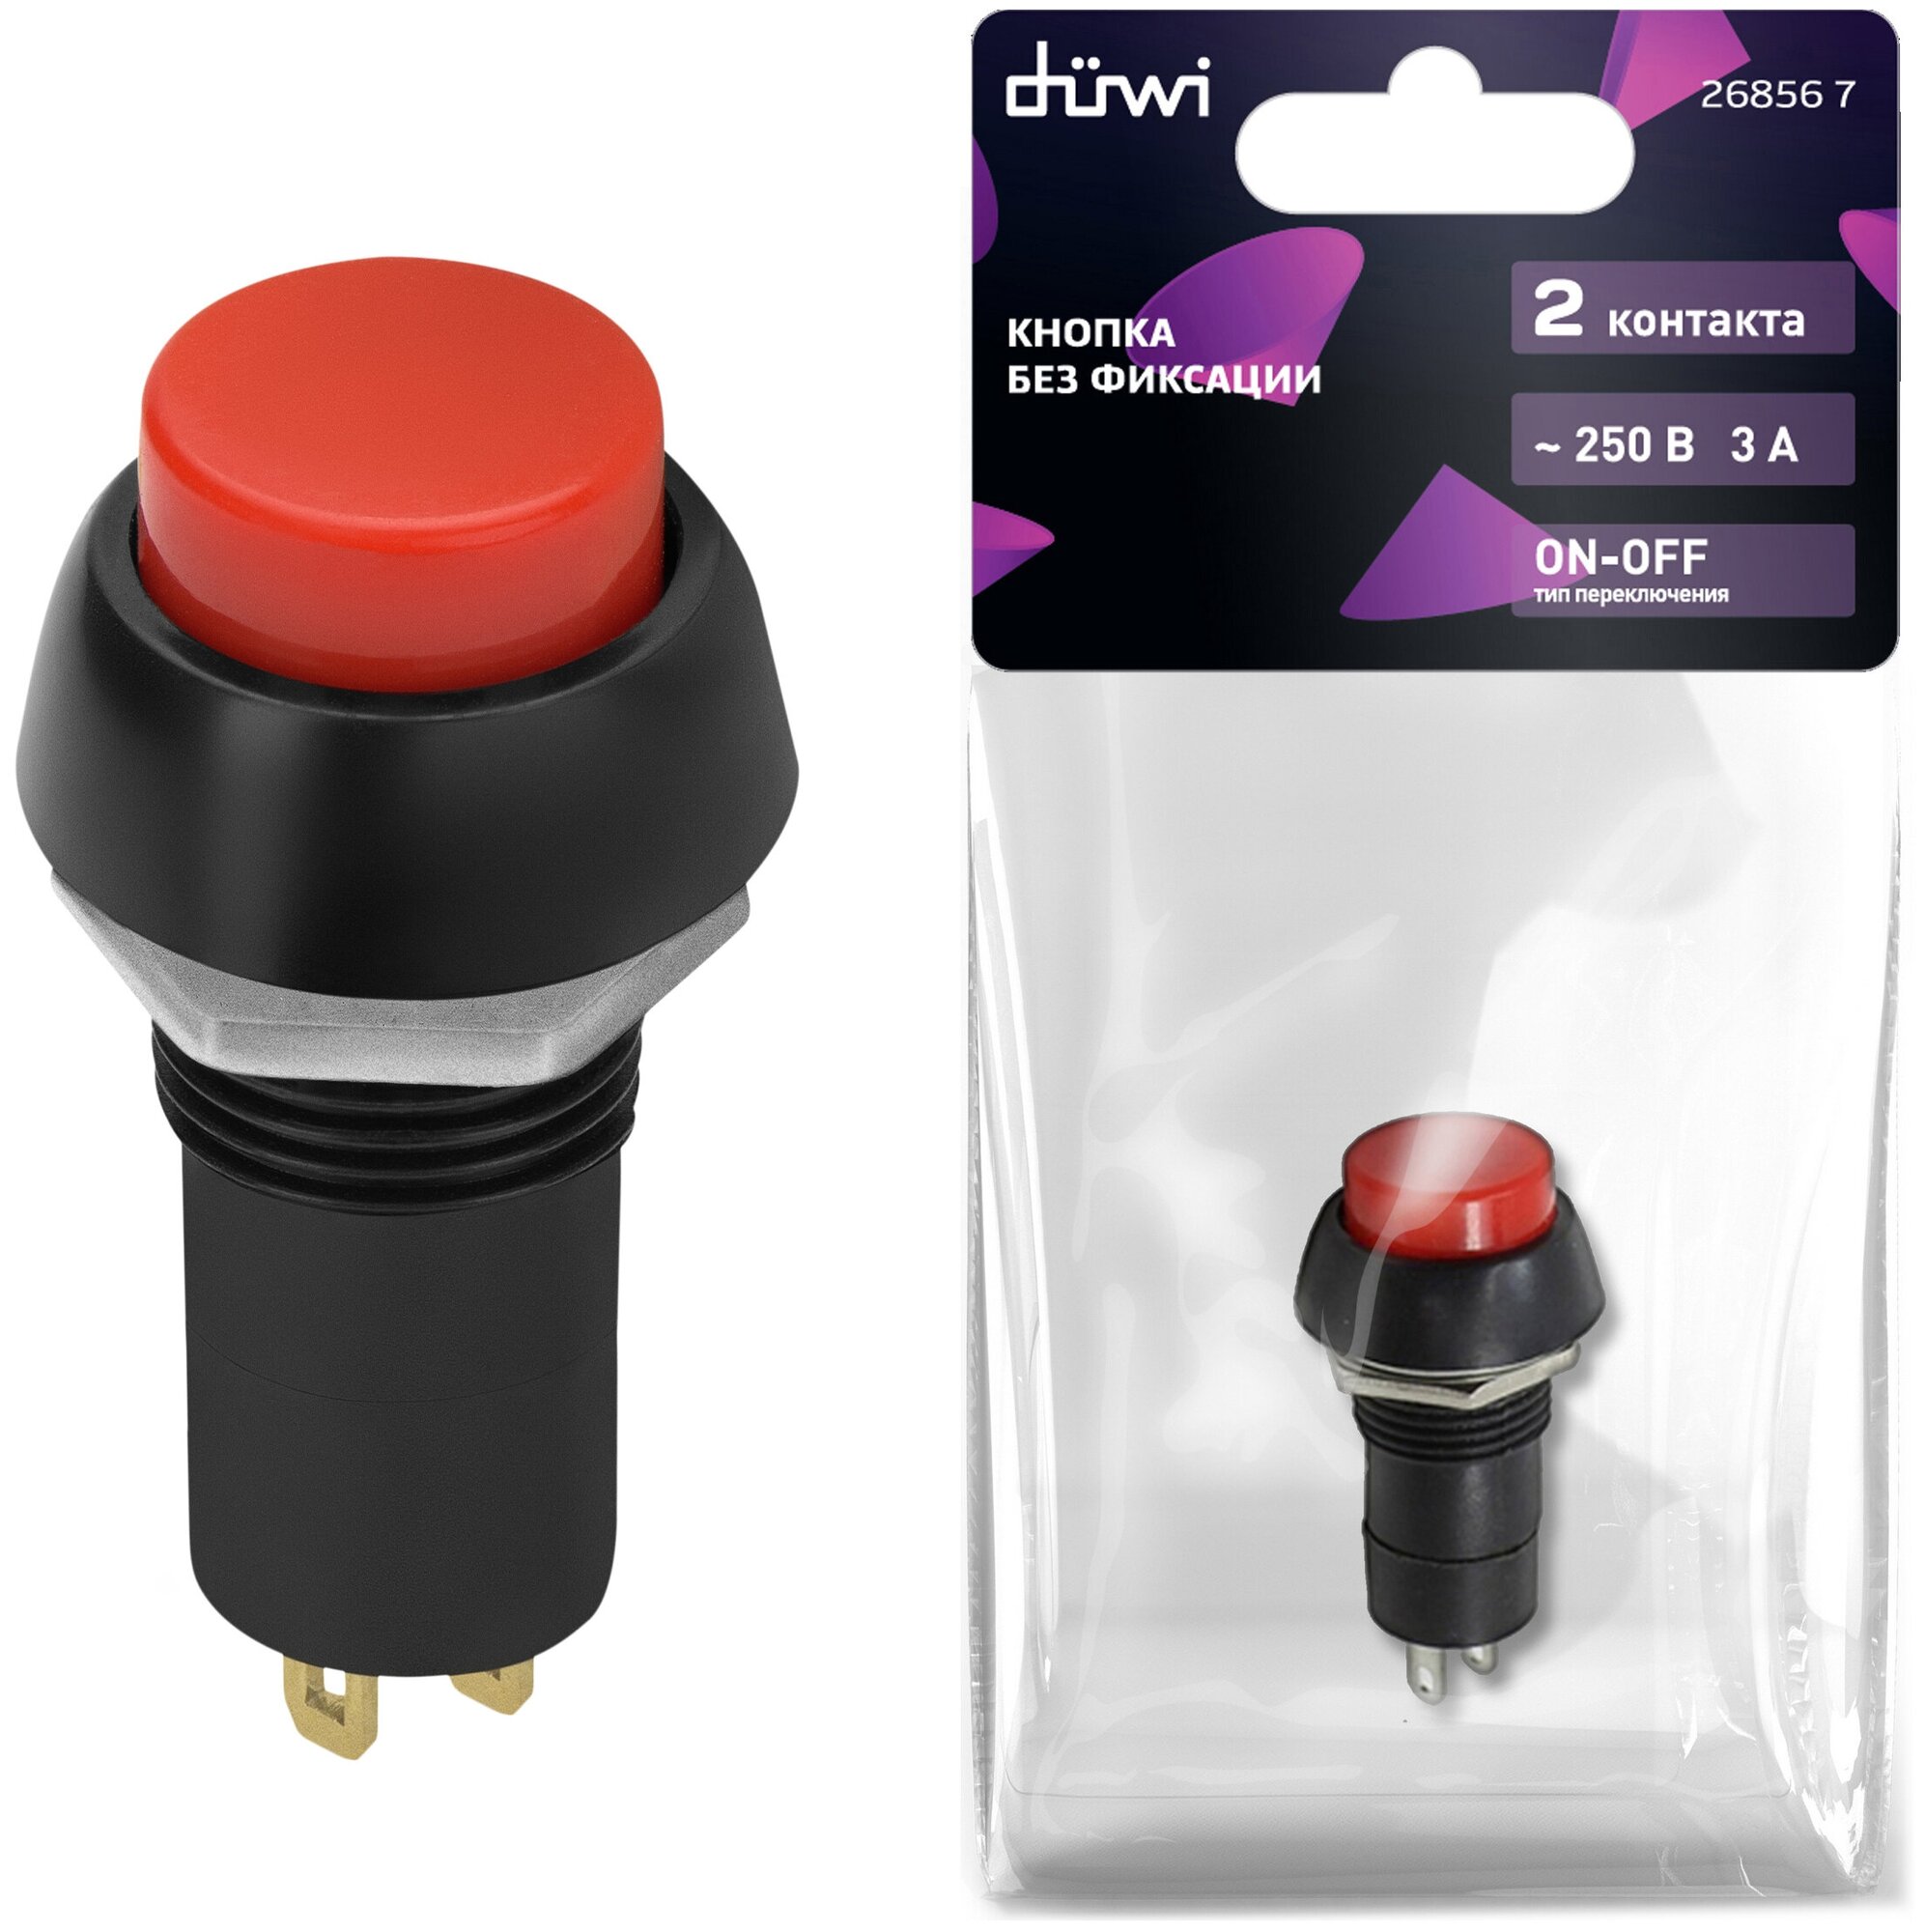 Выключатель кнопочный красная вкл-выкл 2 контакта 250В 3А без фиксации, (PBS-11B), duwi 26856 7